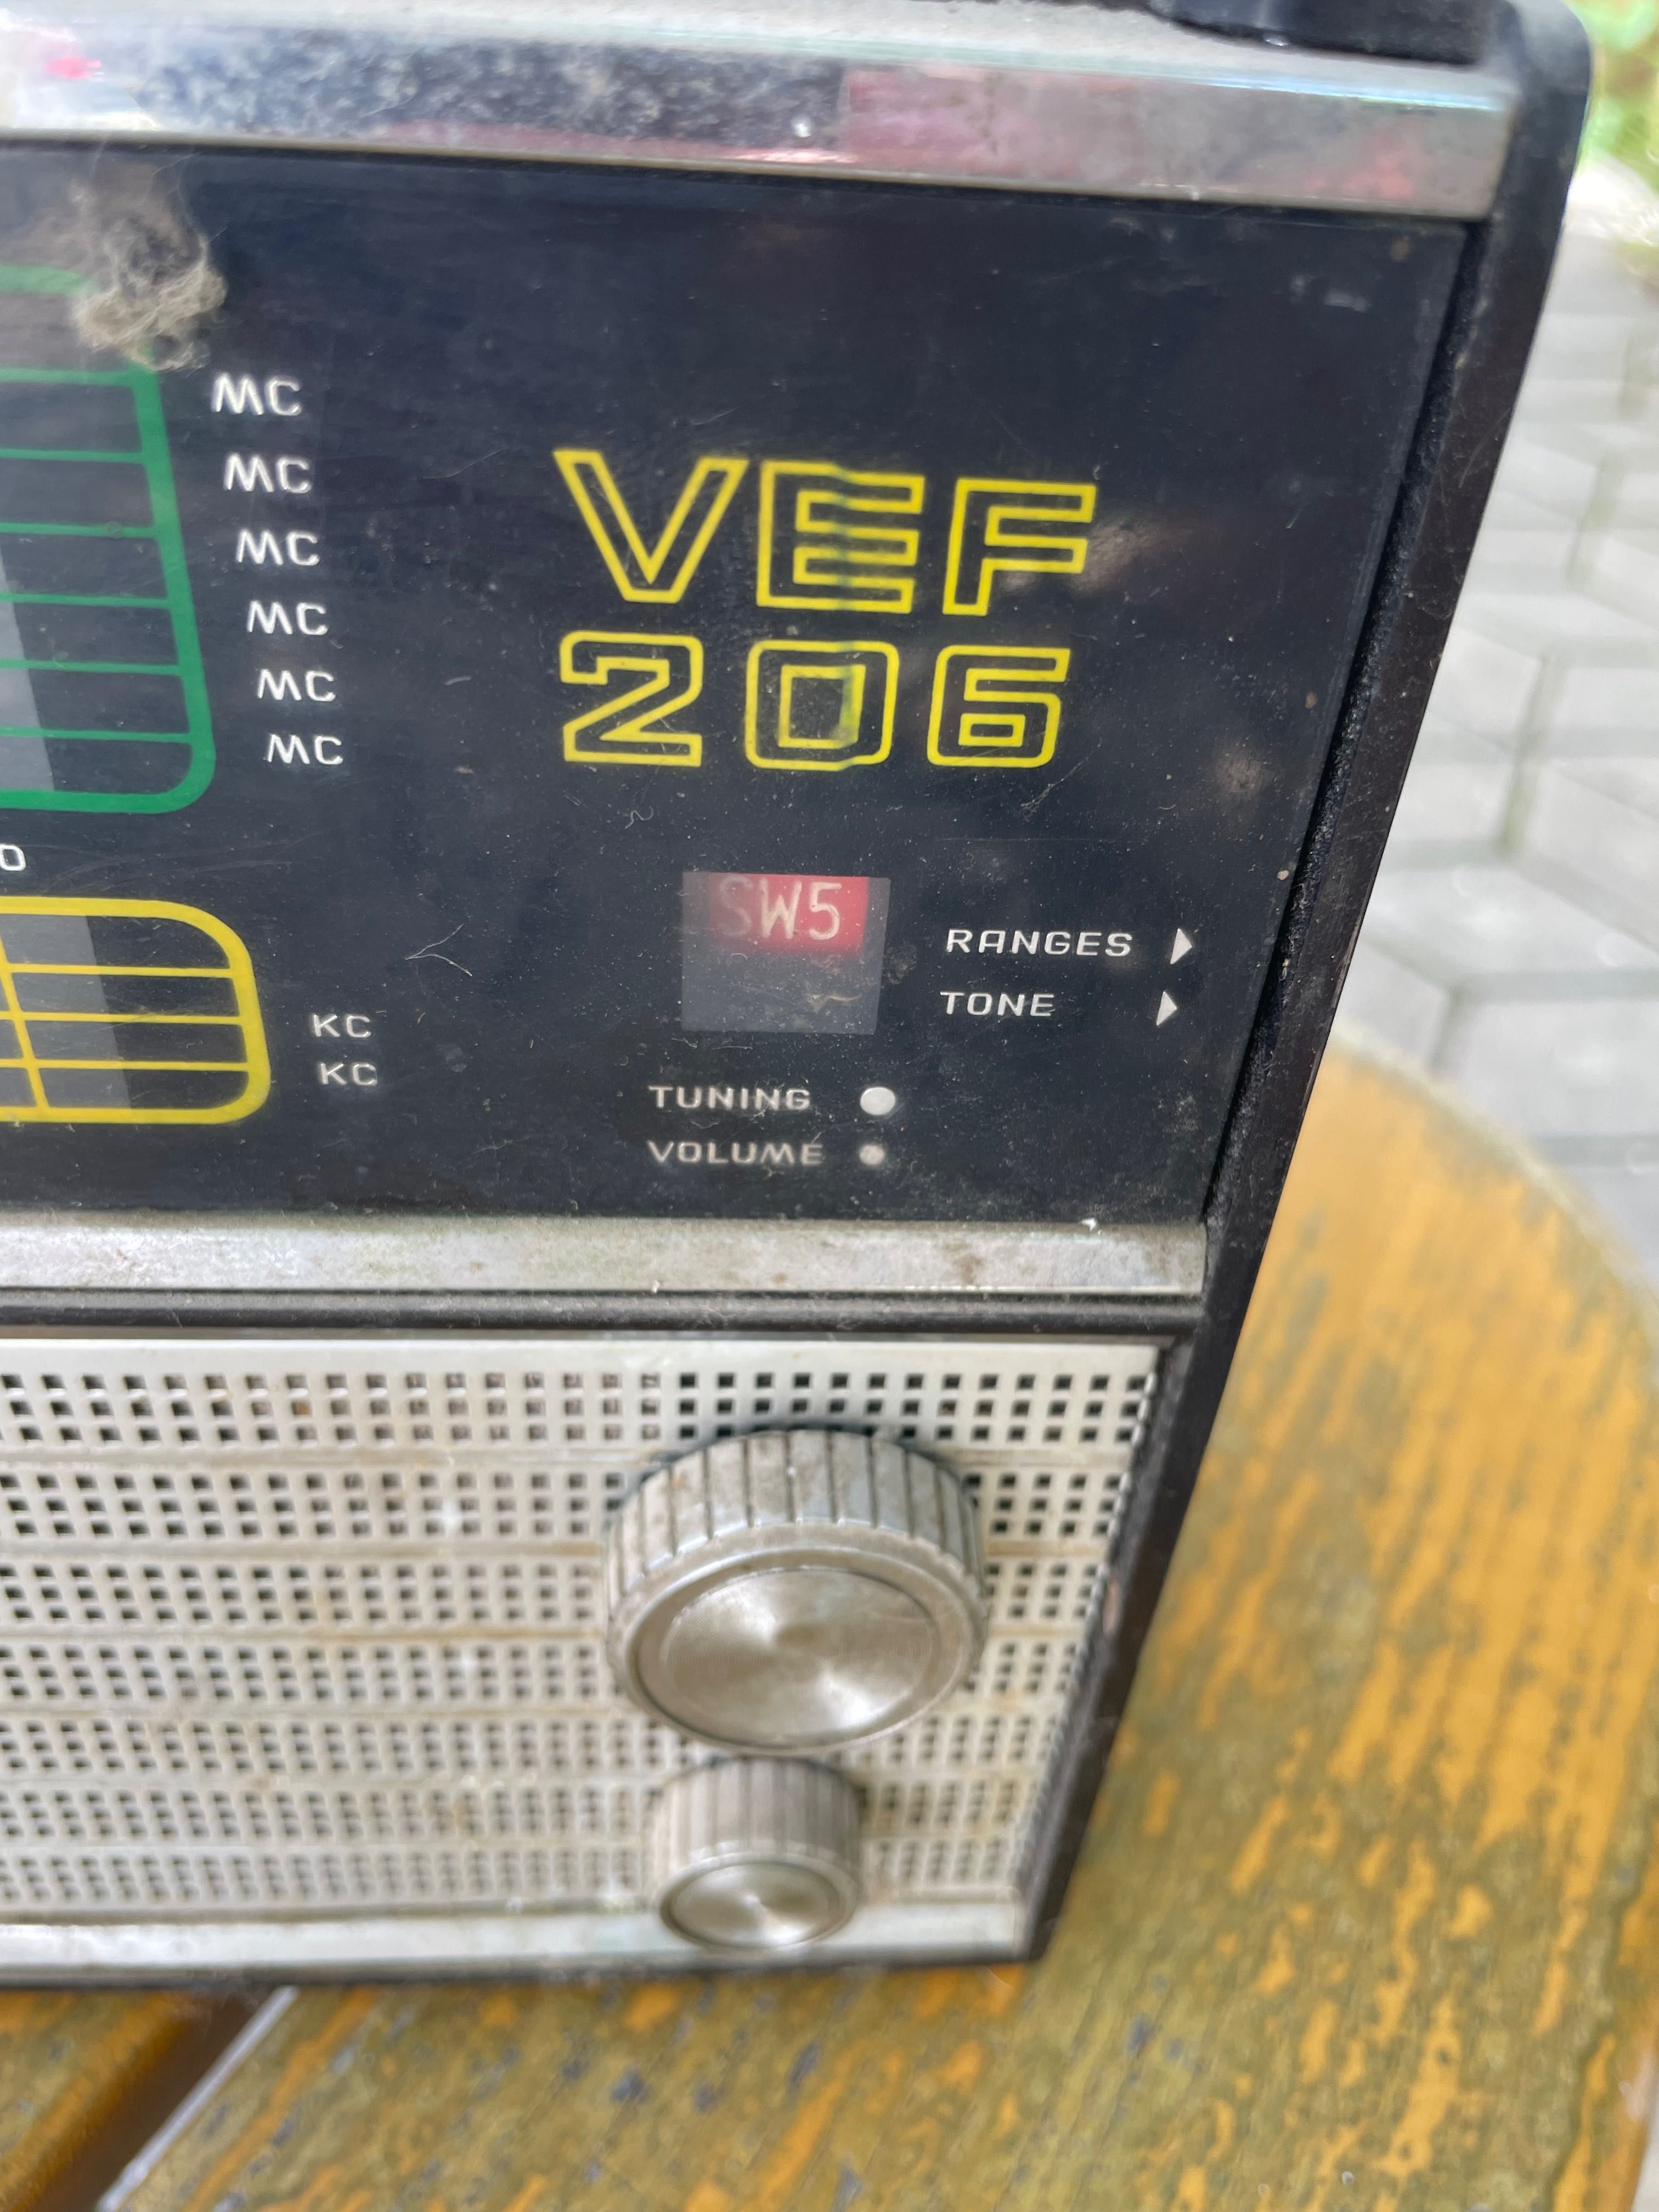 Радиоприёмник(раритет) ВЕФ 206 VEF 206